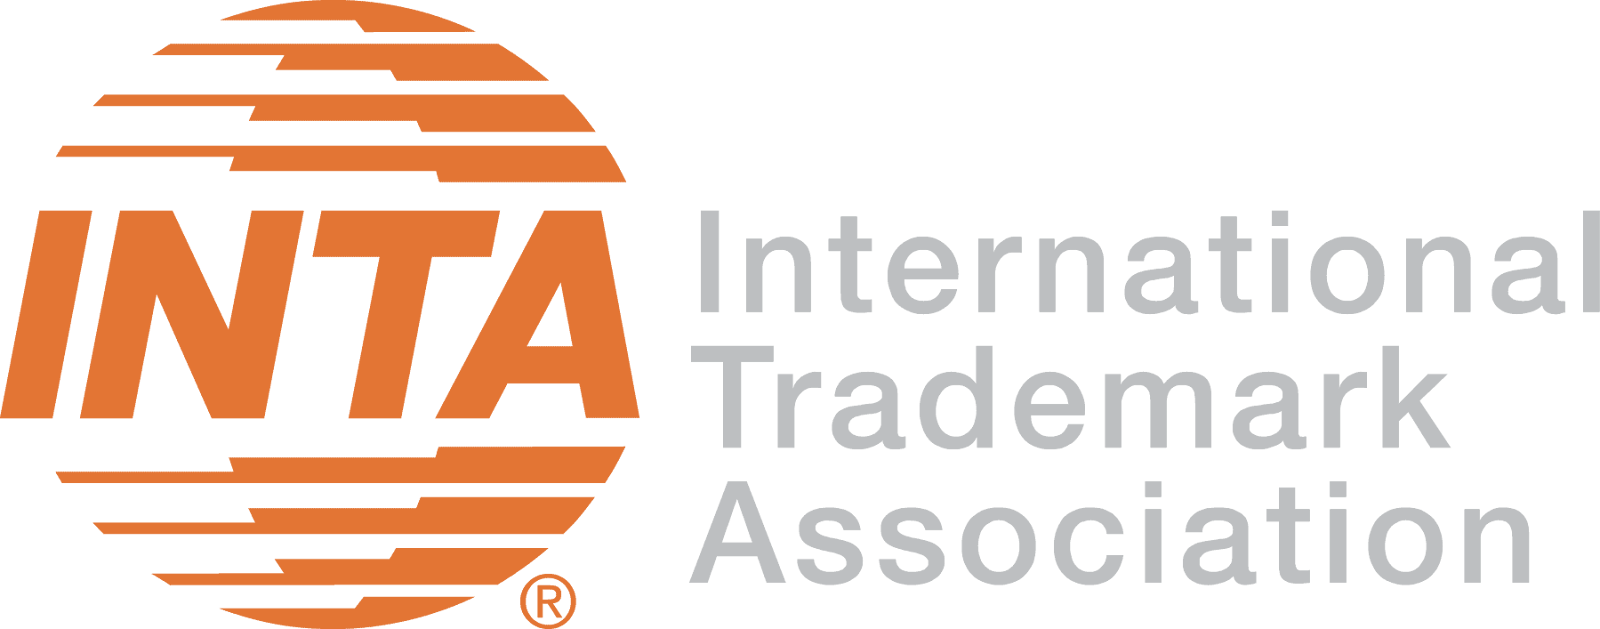 INTA Trademark Association